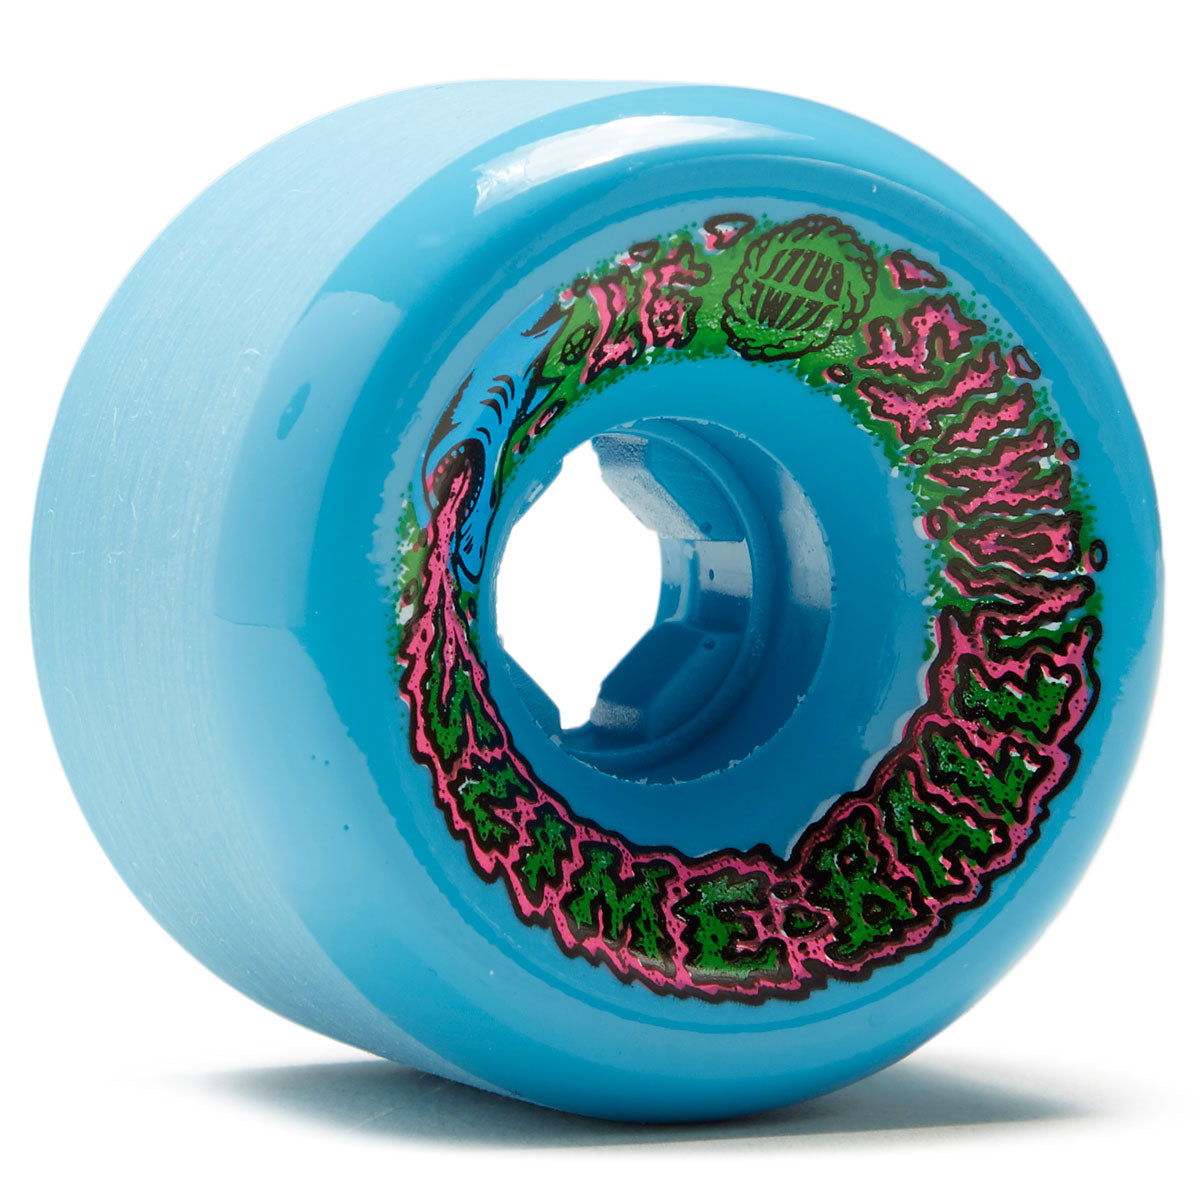 Slime Balls Vomit 97a Skateboard Wheels - Blue - 60mm image 1